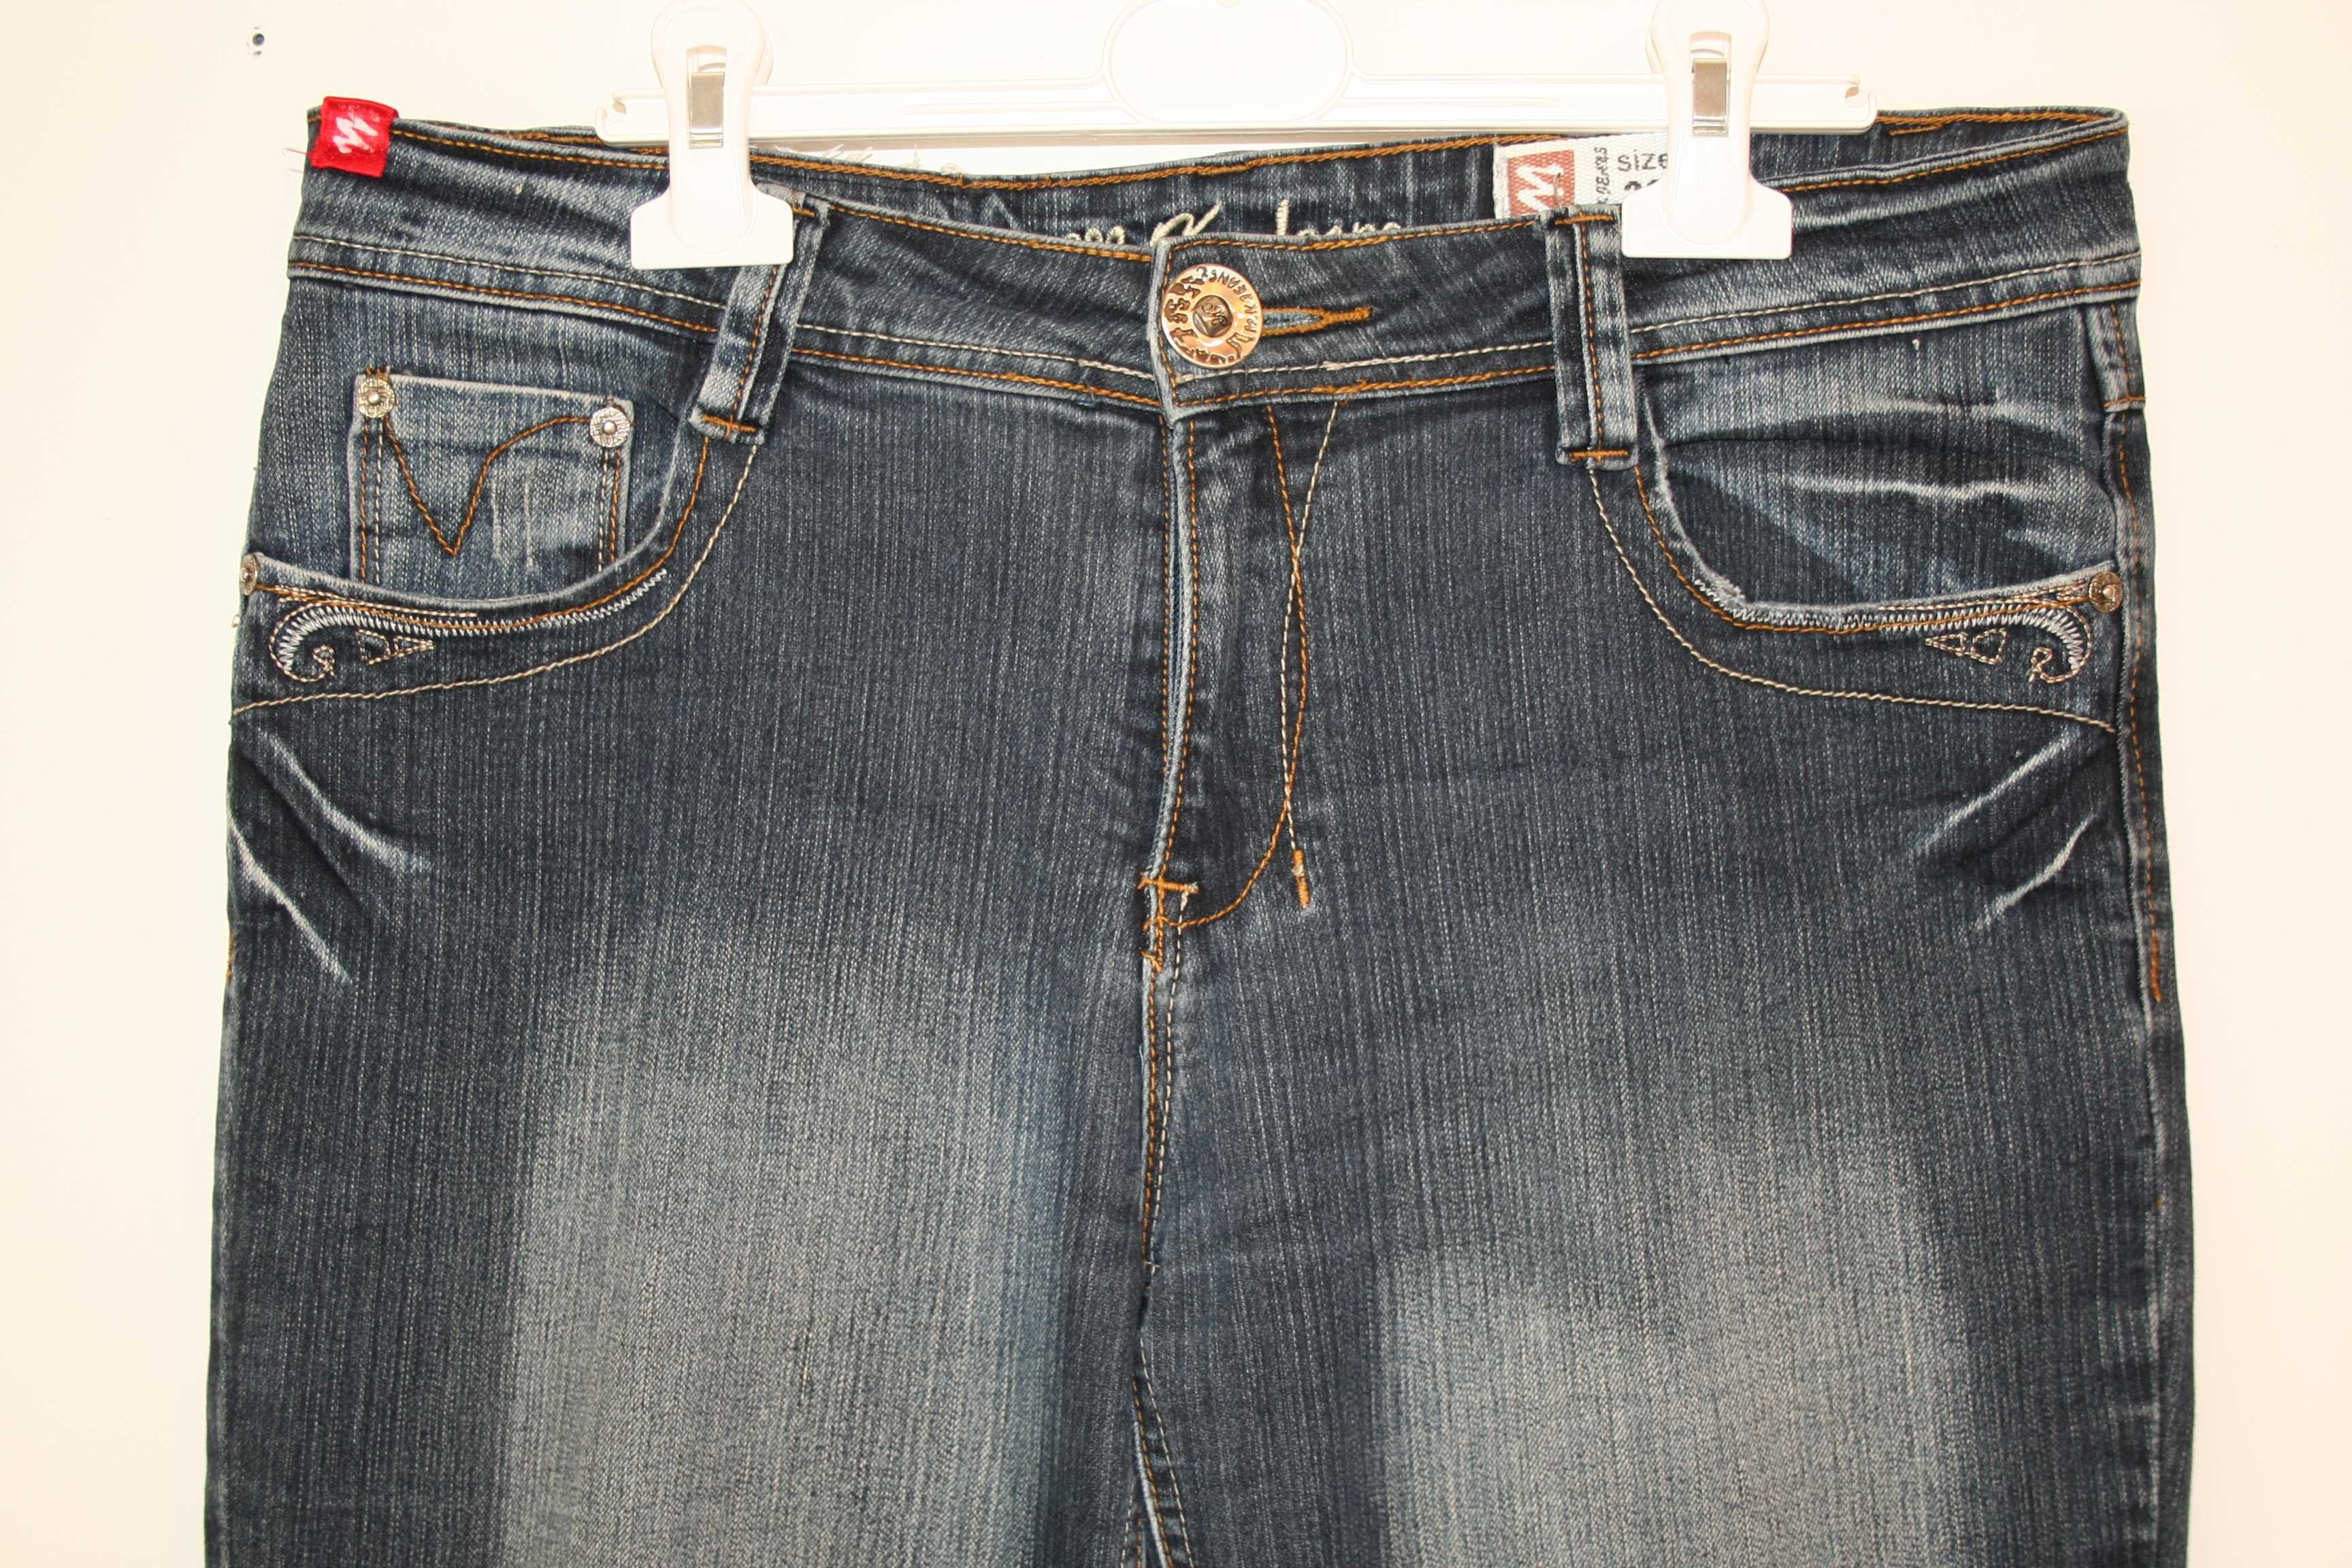 Spodnie Damskie  Jeans firmy: M.K. Jeans Rozmiar z metki 32